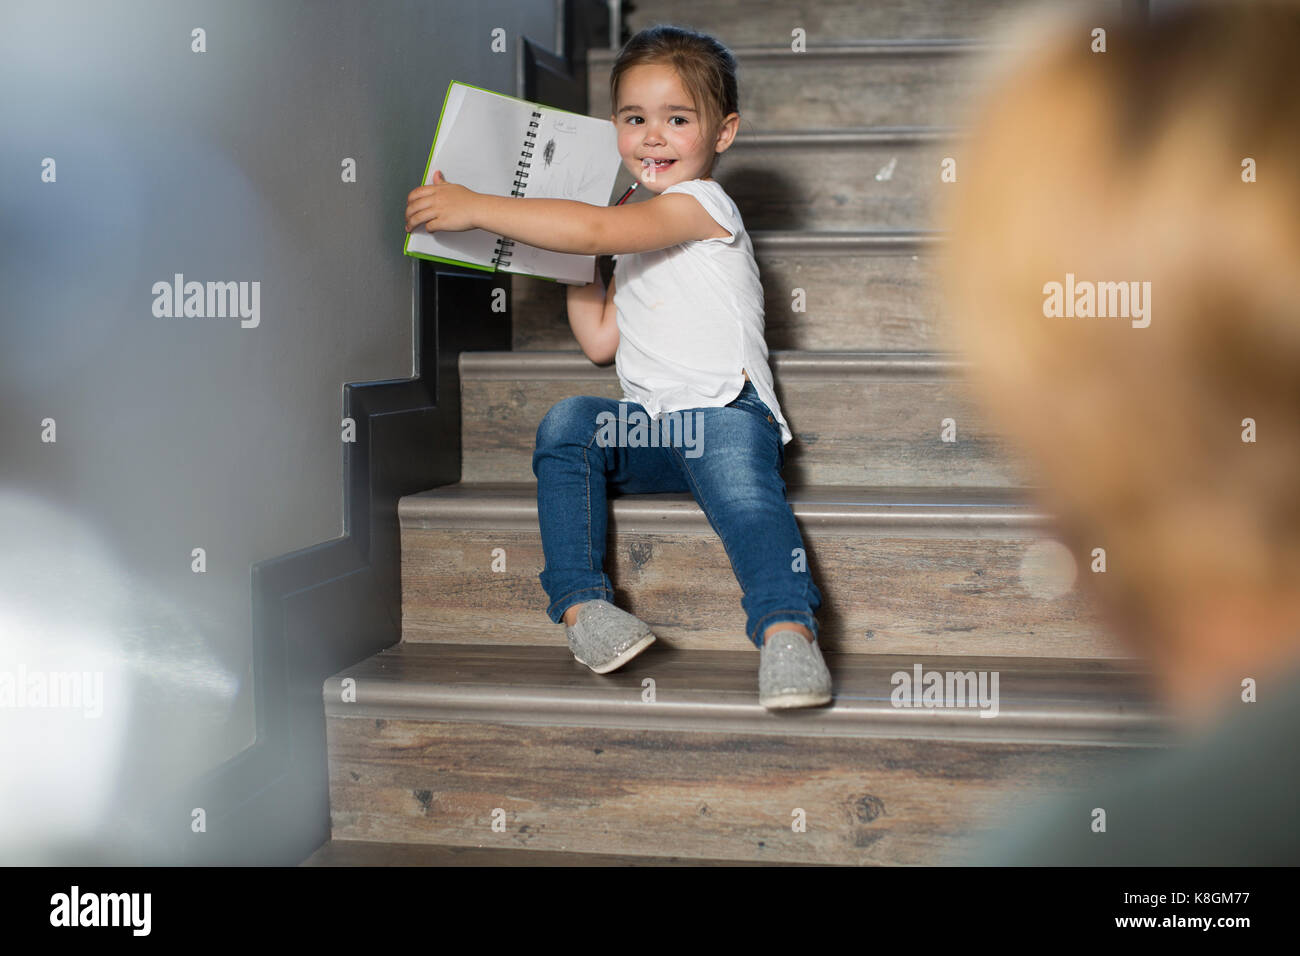 Mädchen auf der Treppe stolz zeigt Mutter Bleistift Zeichnungen Stockfoto